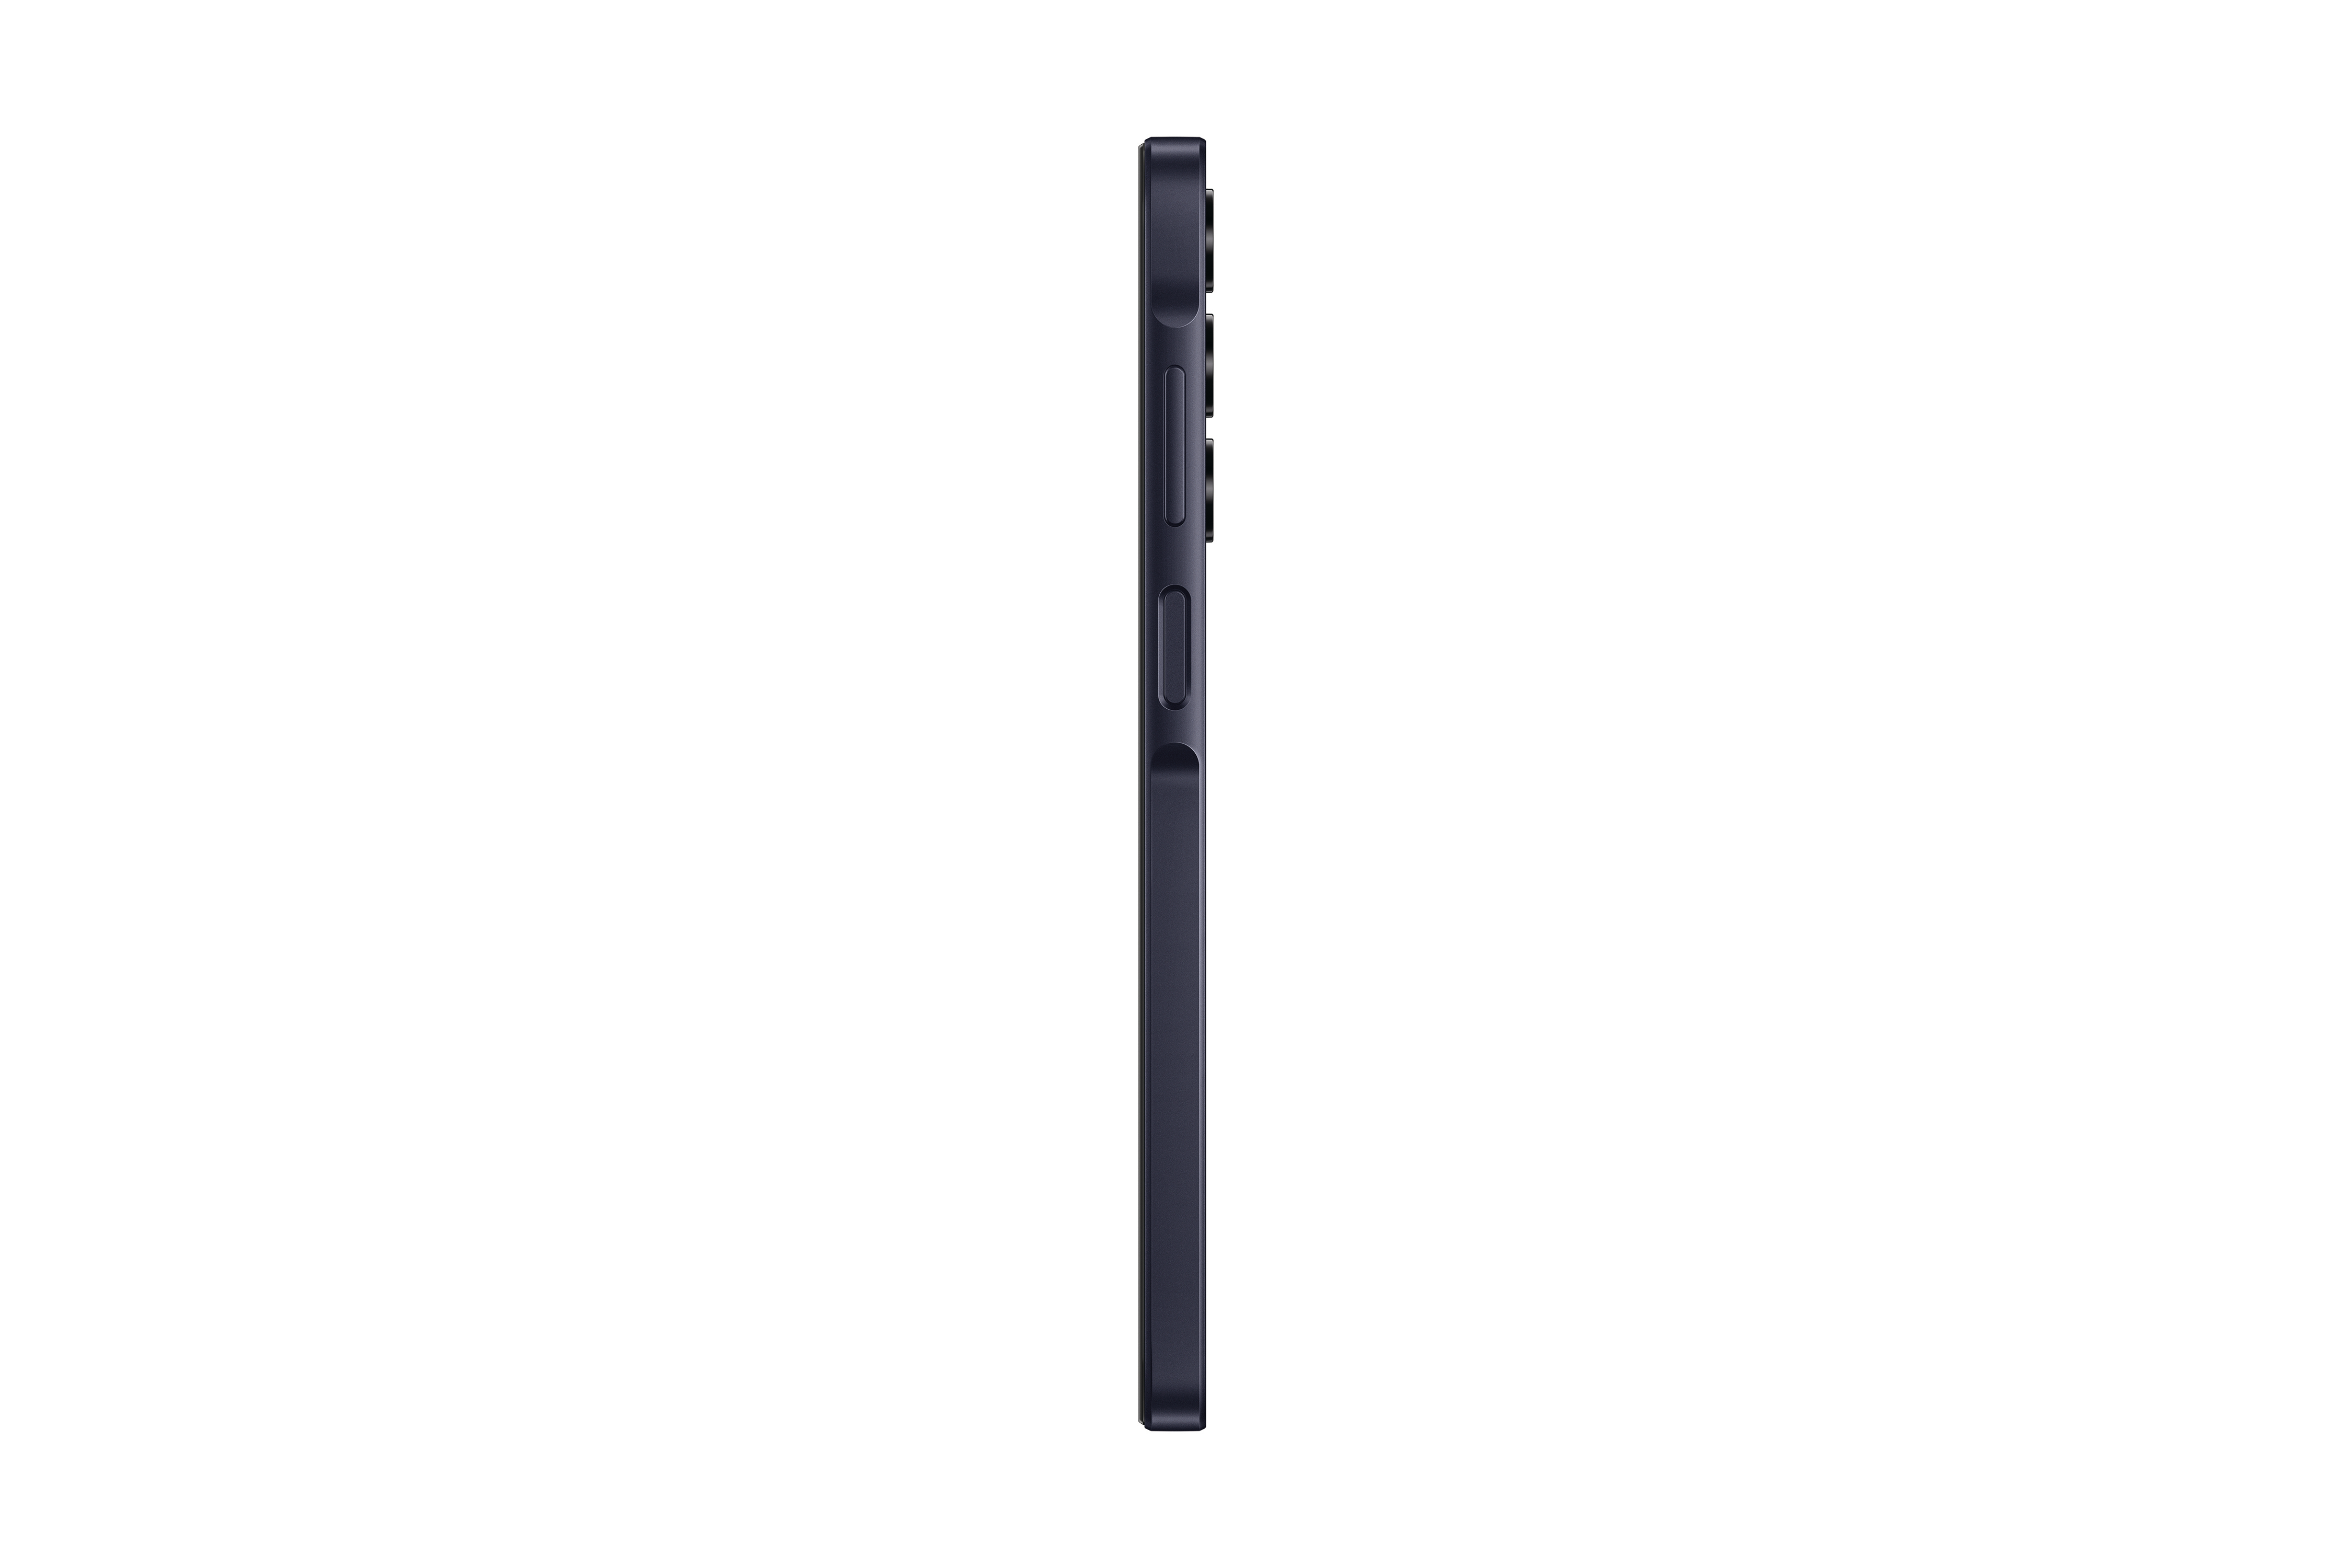 SAMSUNG Galaxy A25 5G SIM 128 Black GB Blue Dual